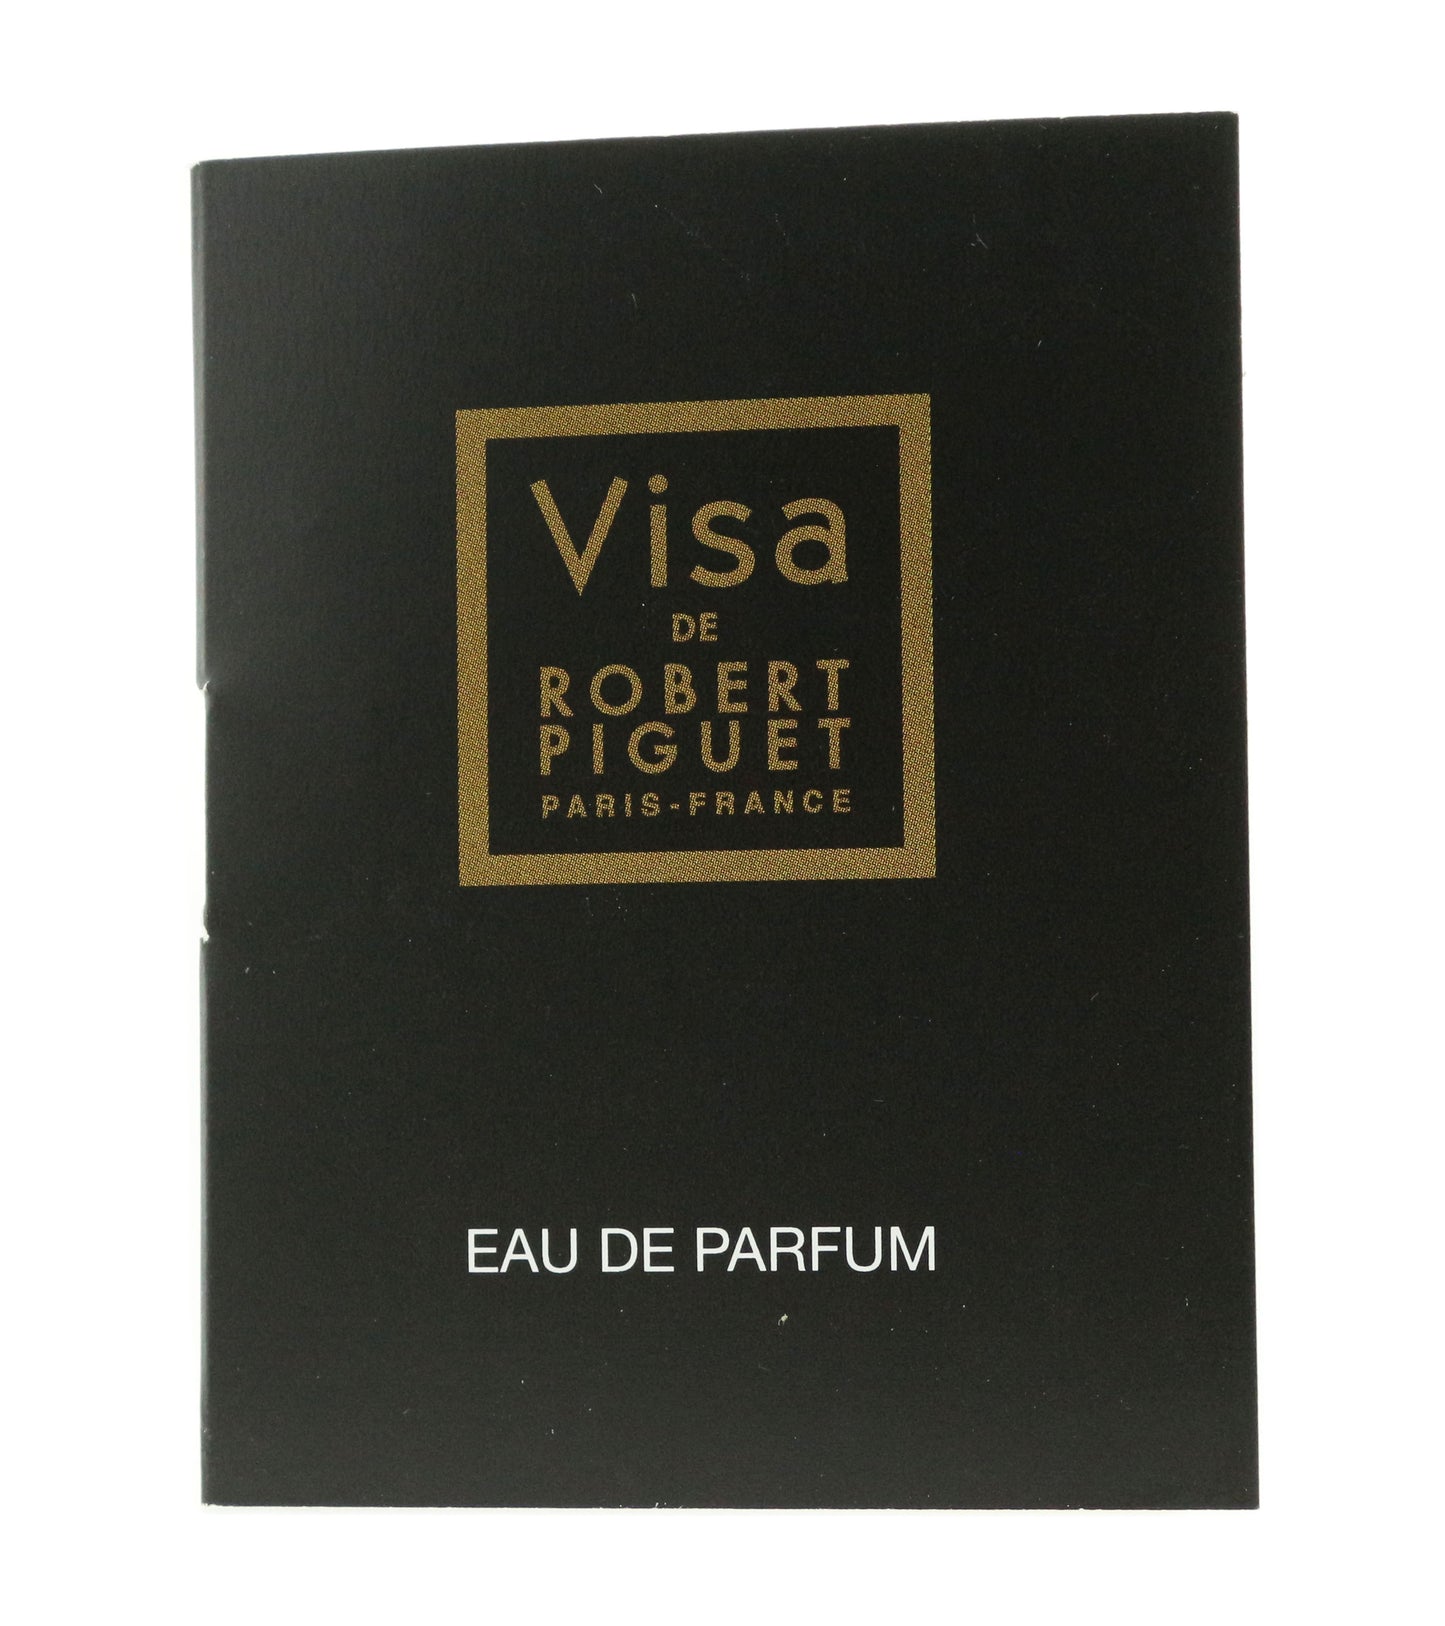 Robert Piguet 'Visa' Eau De Parfum 0.034oz/1ml Spray